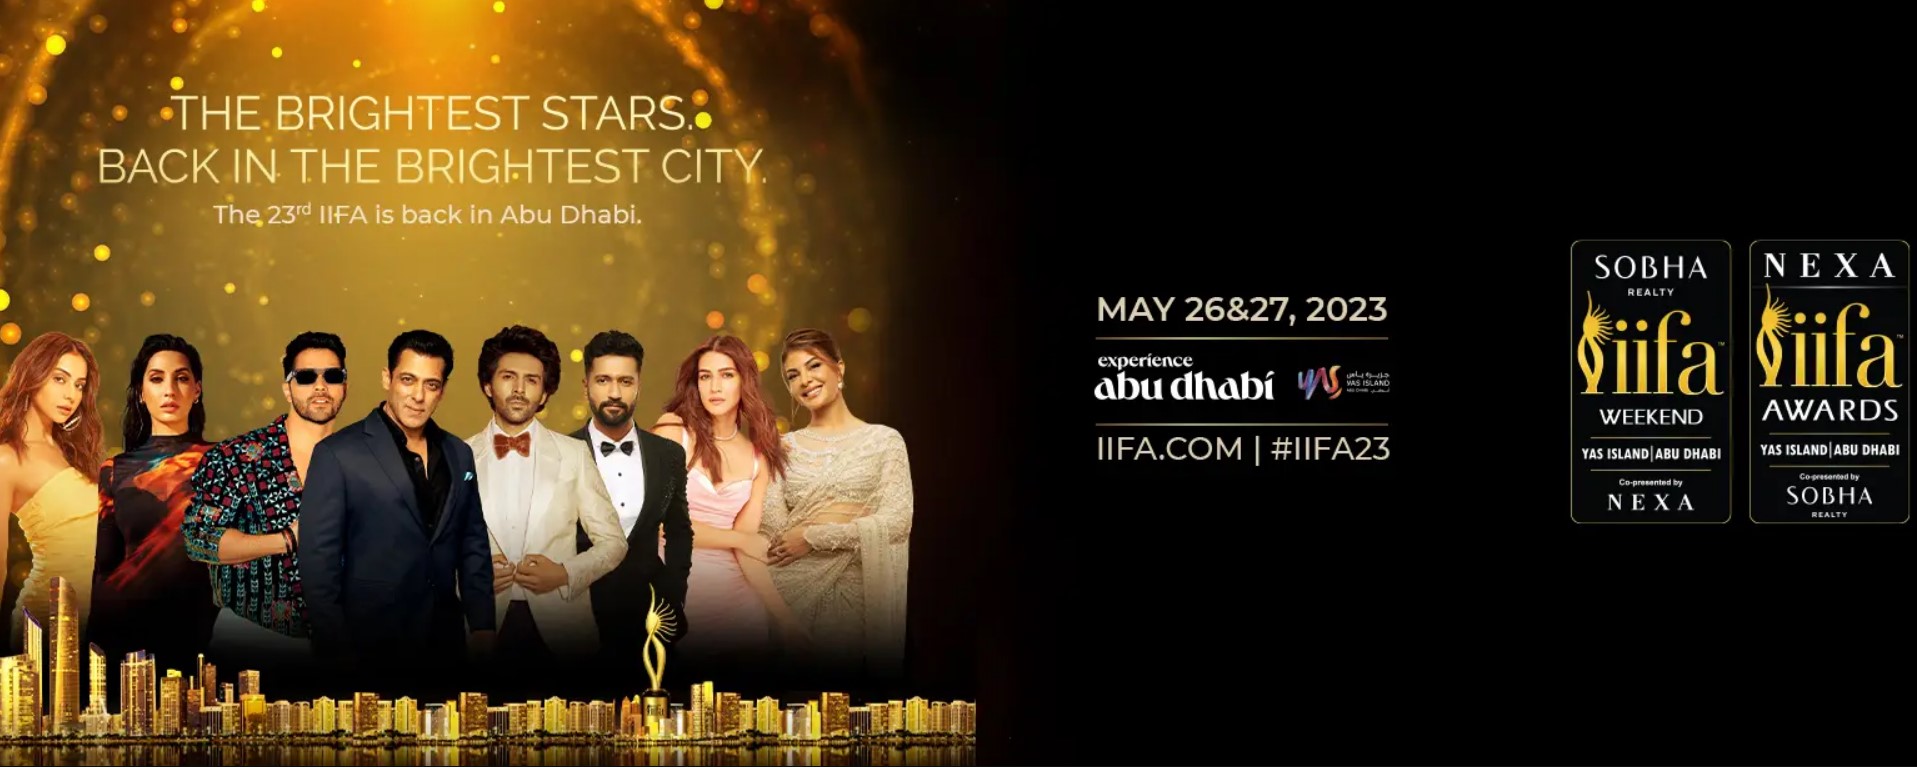 IIFA Awards 2023 Tickets On Sale! Dubai Bliss